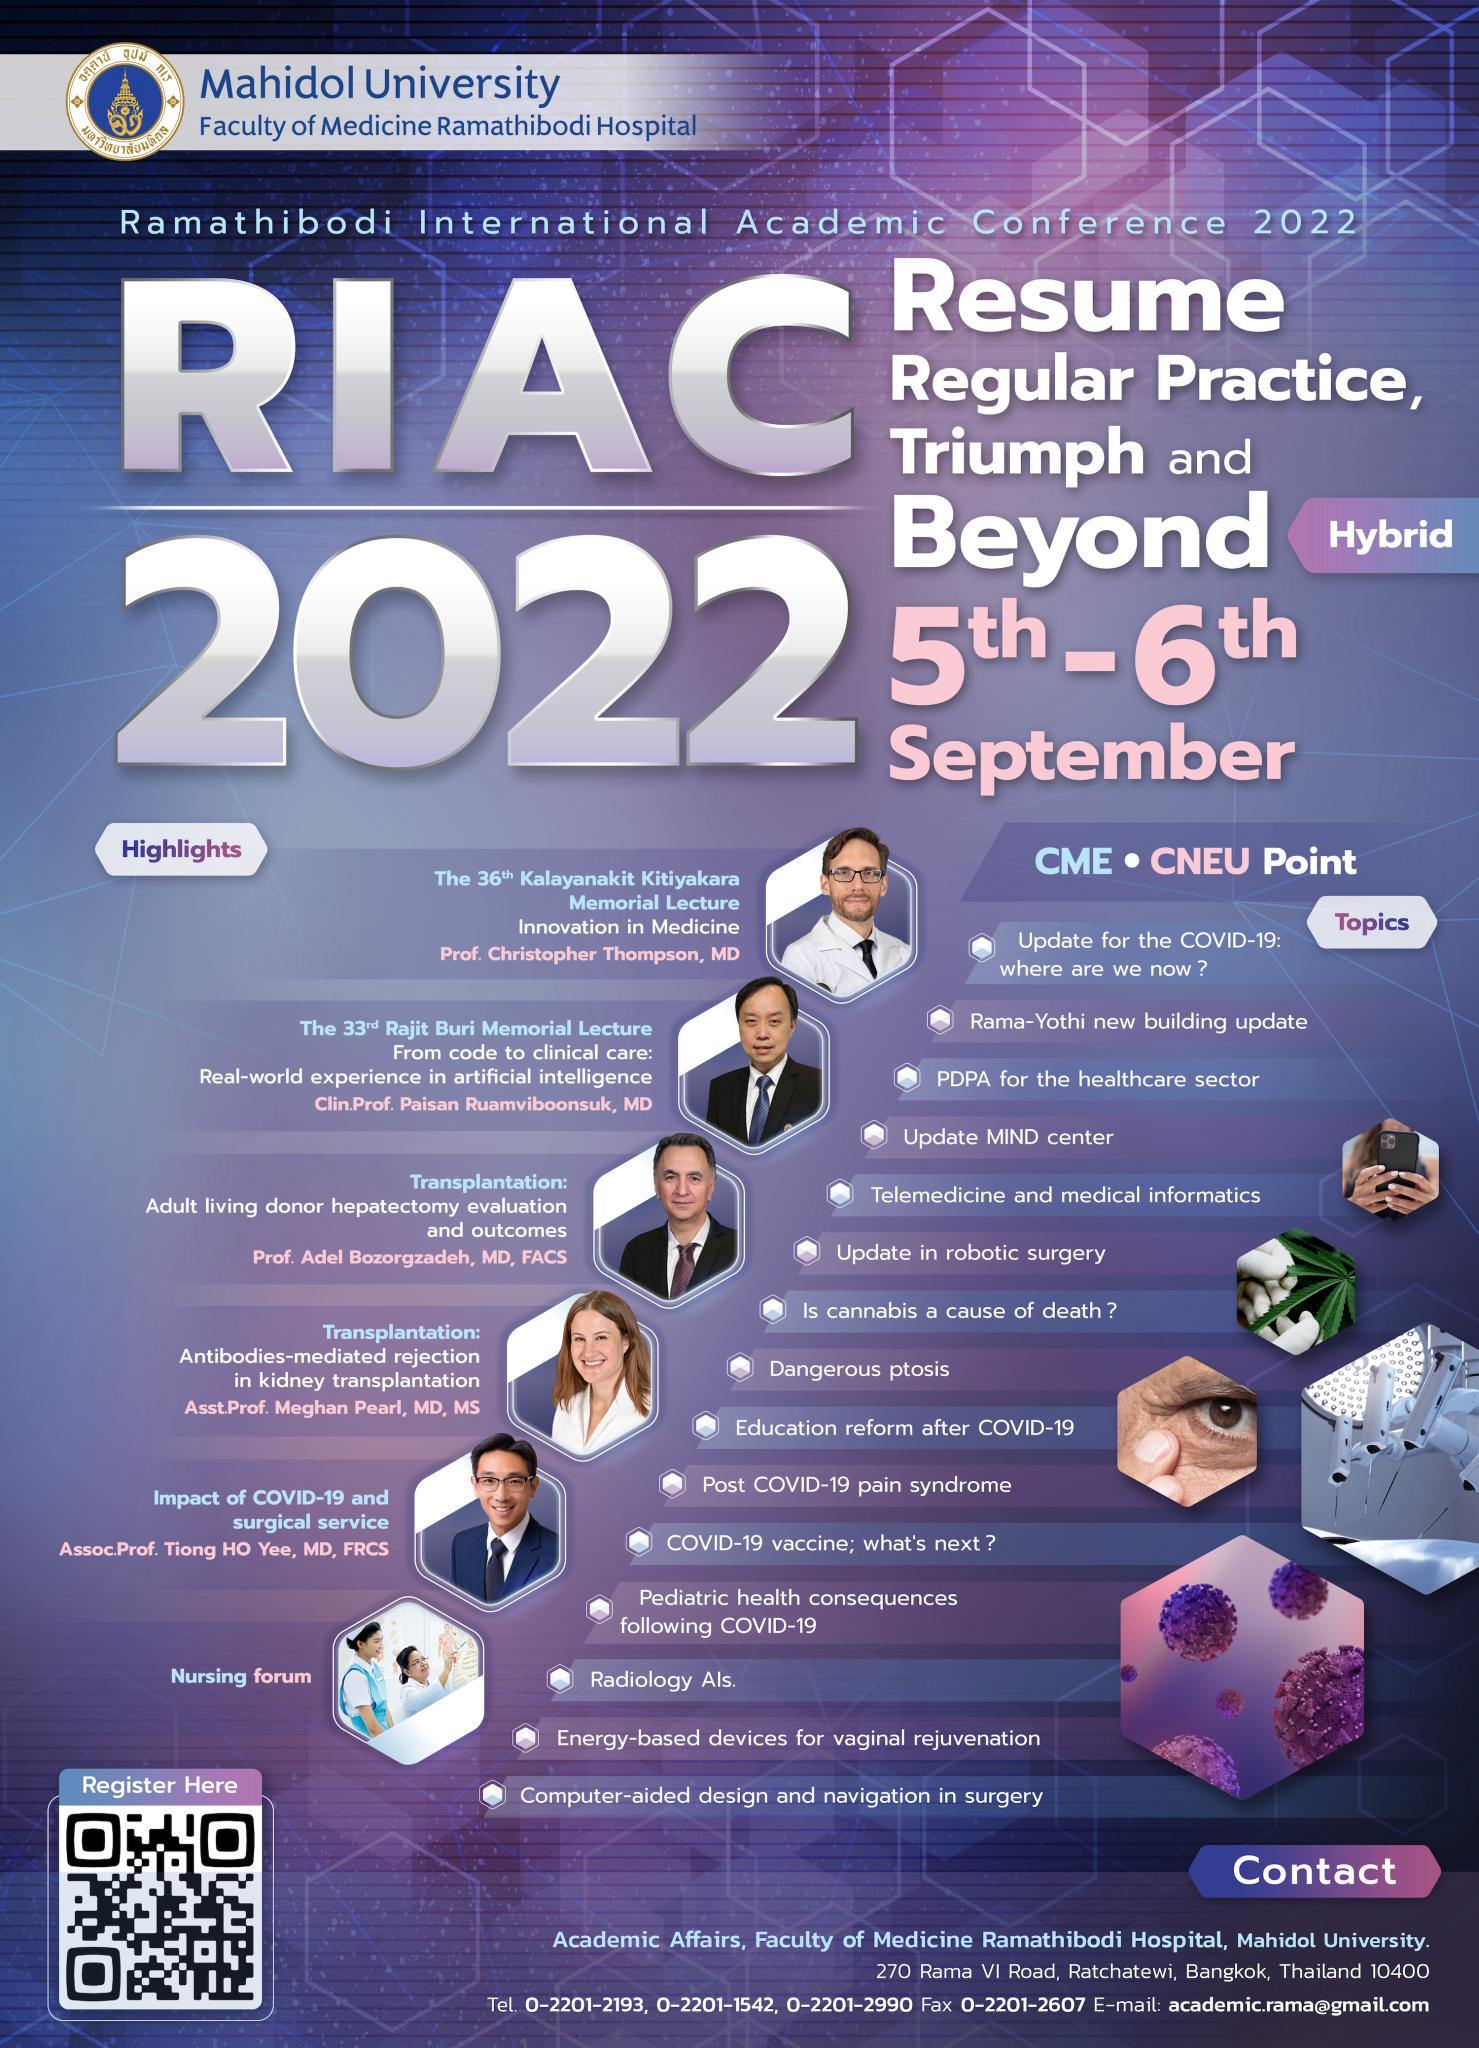 Ramathibodi International Academic Conference 2022